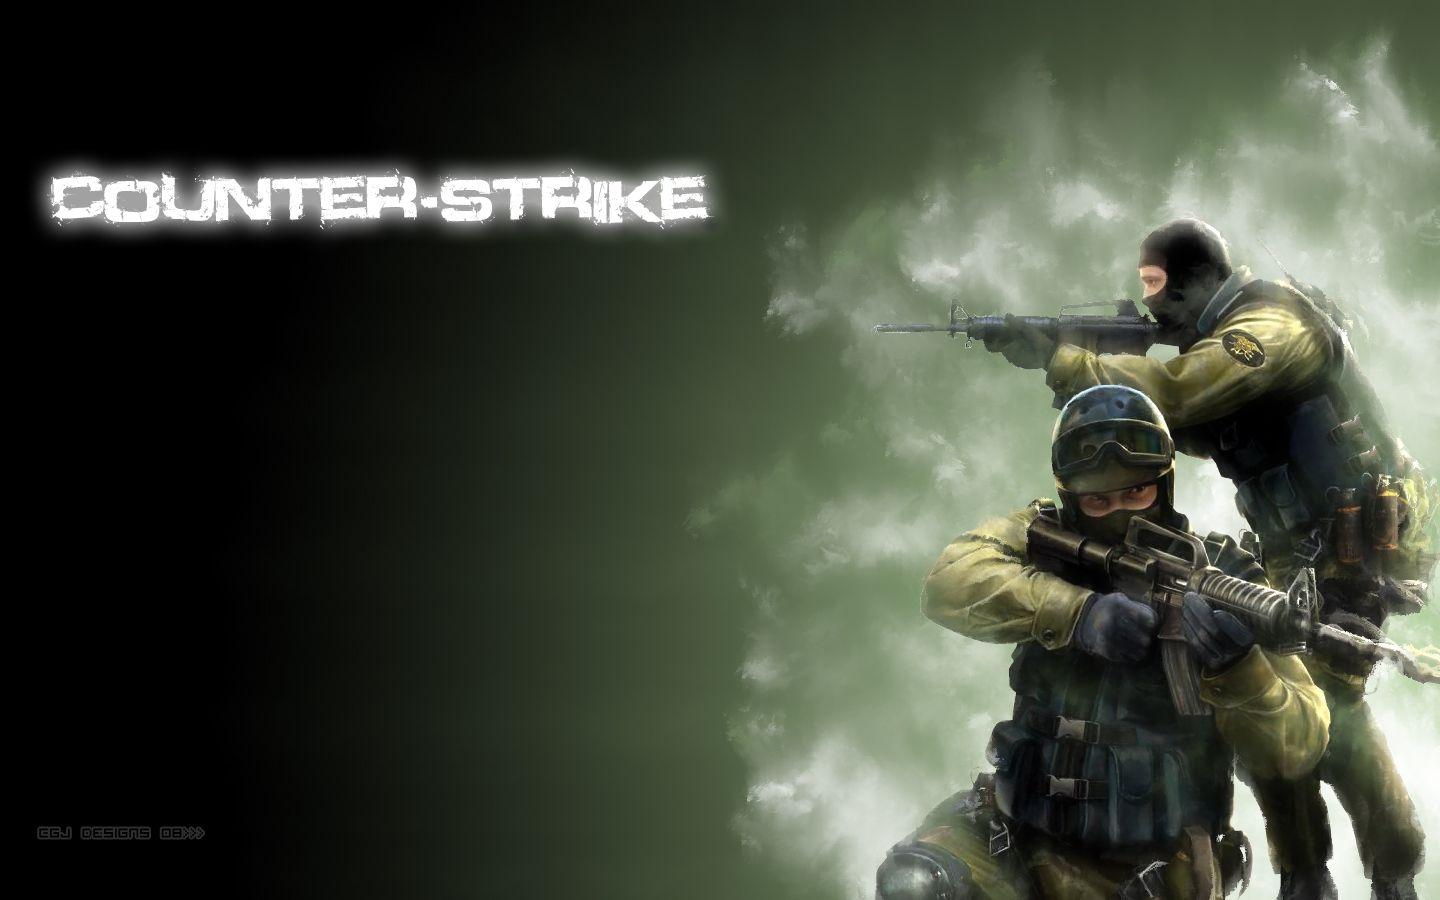 42+] Counter Strike Wallpaper Download - WallpaperSafari